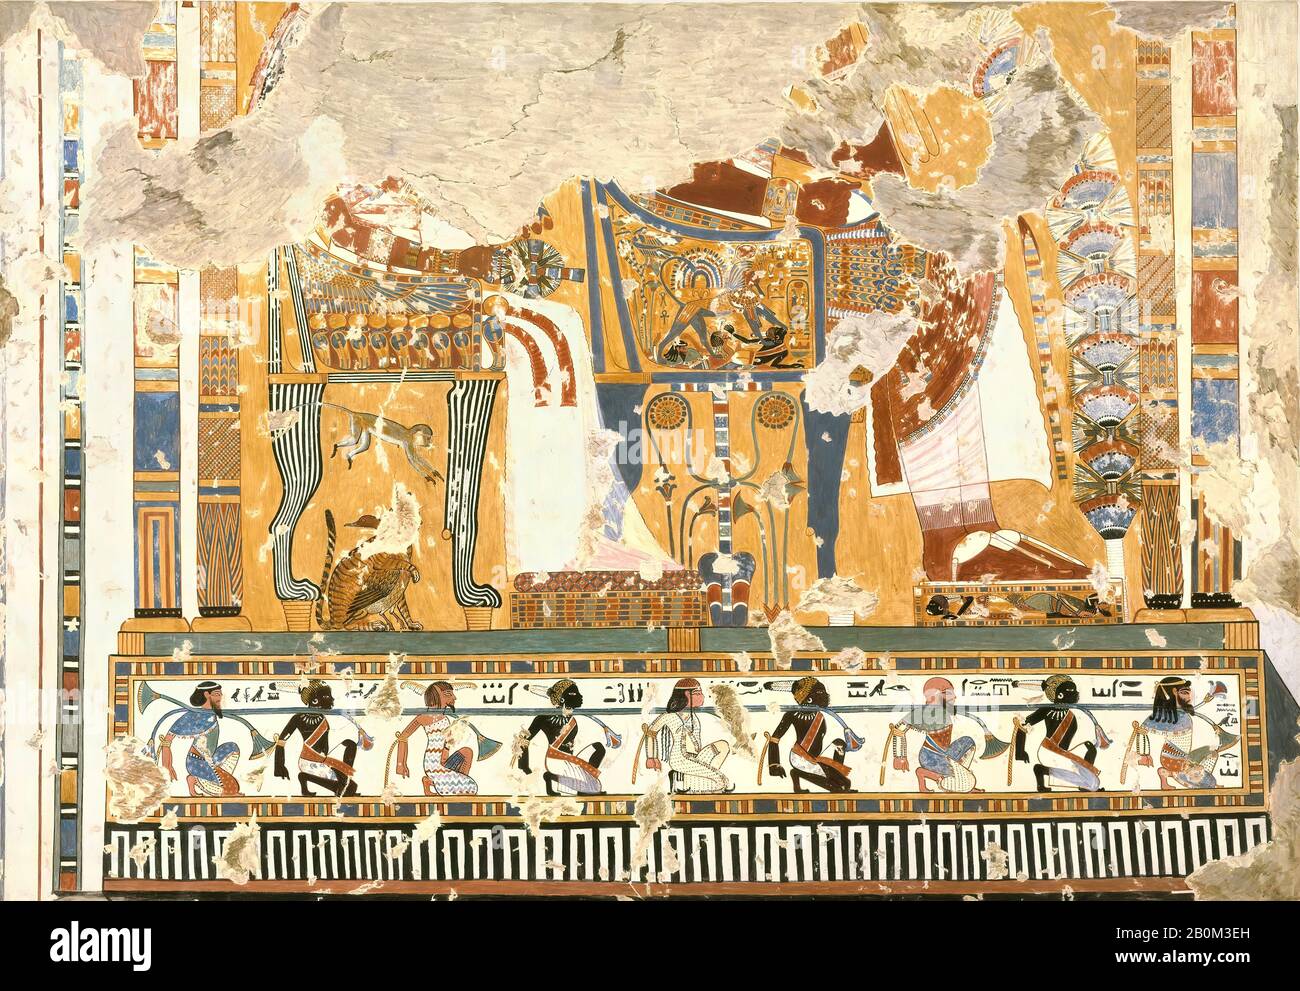 Nina de Garis Davies, Amenhotep III e la regina Tiye entronato Sotto un chiosco, Tomba di Anen, nuovo Regno, Nina de Garis Davies (1881–1965), Dinastia 18, regno di Amenhotep III, ca. 1390–1352 a.C., Dall'Egitto, dall'Egitto superiore, Tebe, Sceicco Abd el-Qurna, Tomba di Anen, 1931, Tempera su carta, facsimile: H. 71.2 × W. 103.4 cm (28 1/16 × 40 11/16 in.); Incorniciata: H. 73 × W. 104.5 cm (28 3/4 × 41 1/8 in.); Scala 1:2 Foto Stock